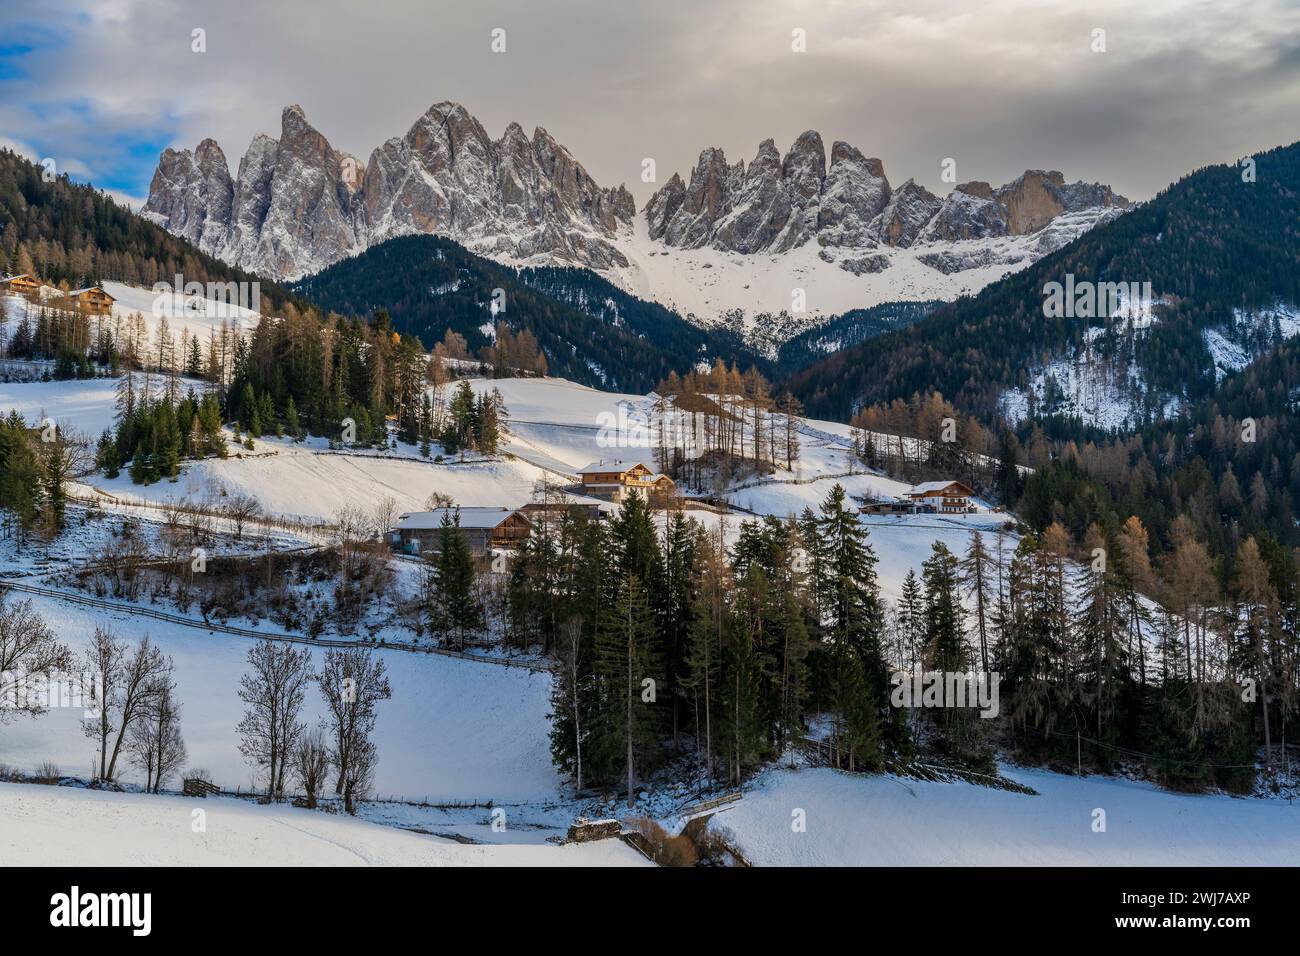 Vue panoramique hivernale du groupe montagneux Odle (Geislergruppe), Dolomites, Villnoss-Funes, Tyrol du Sud, Italie Banque D'Images